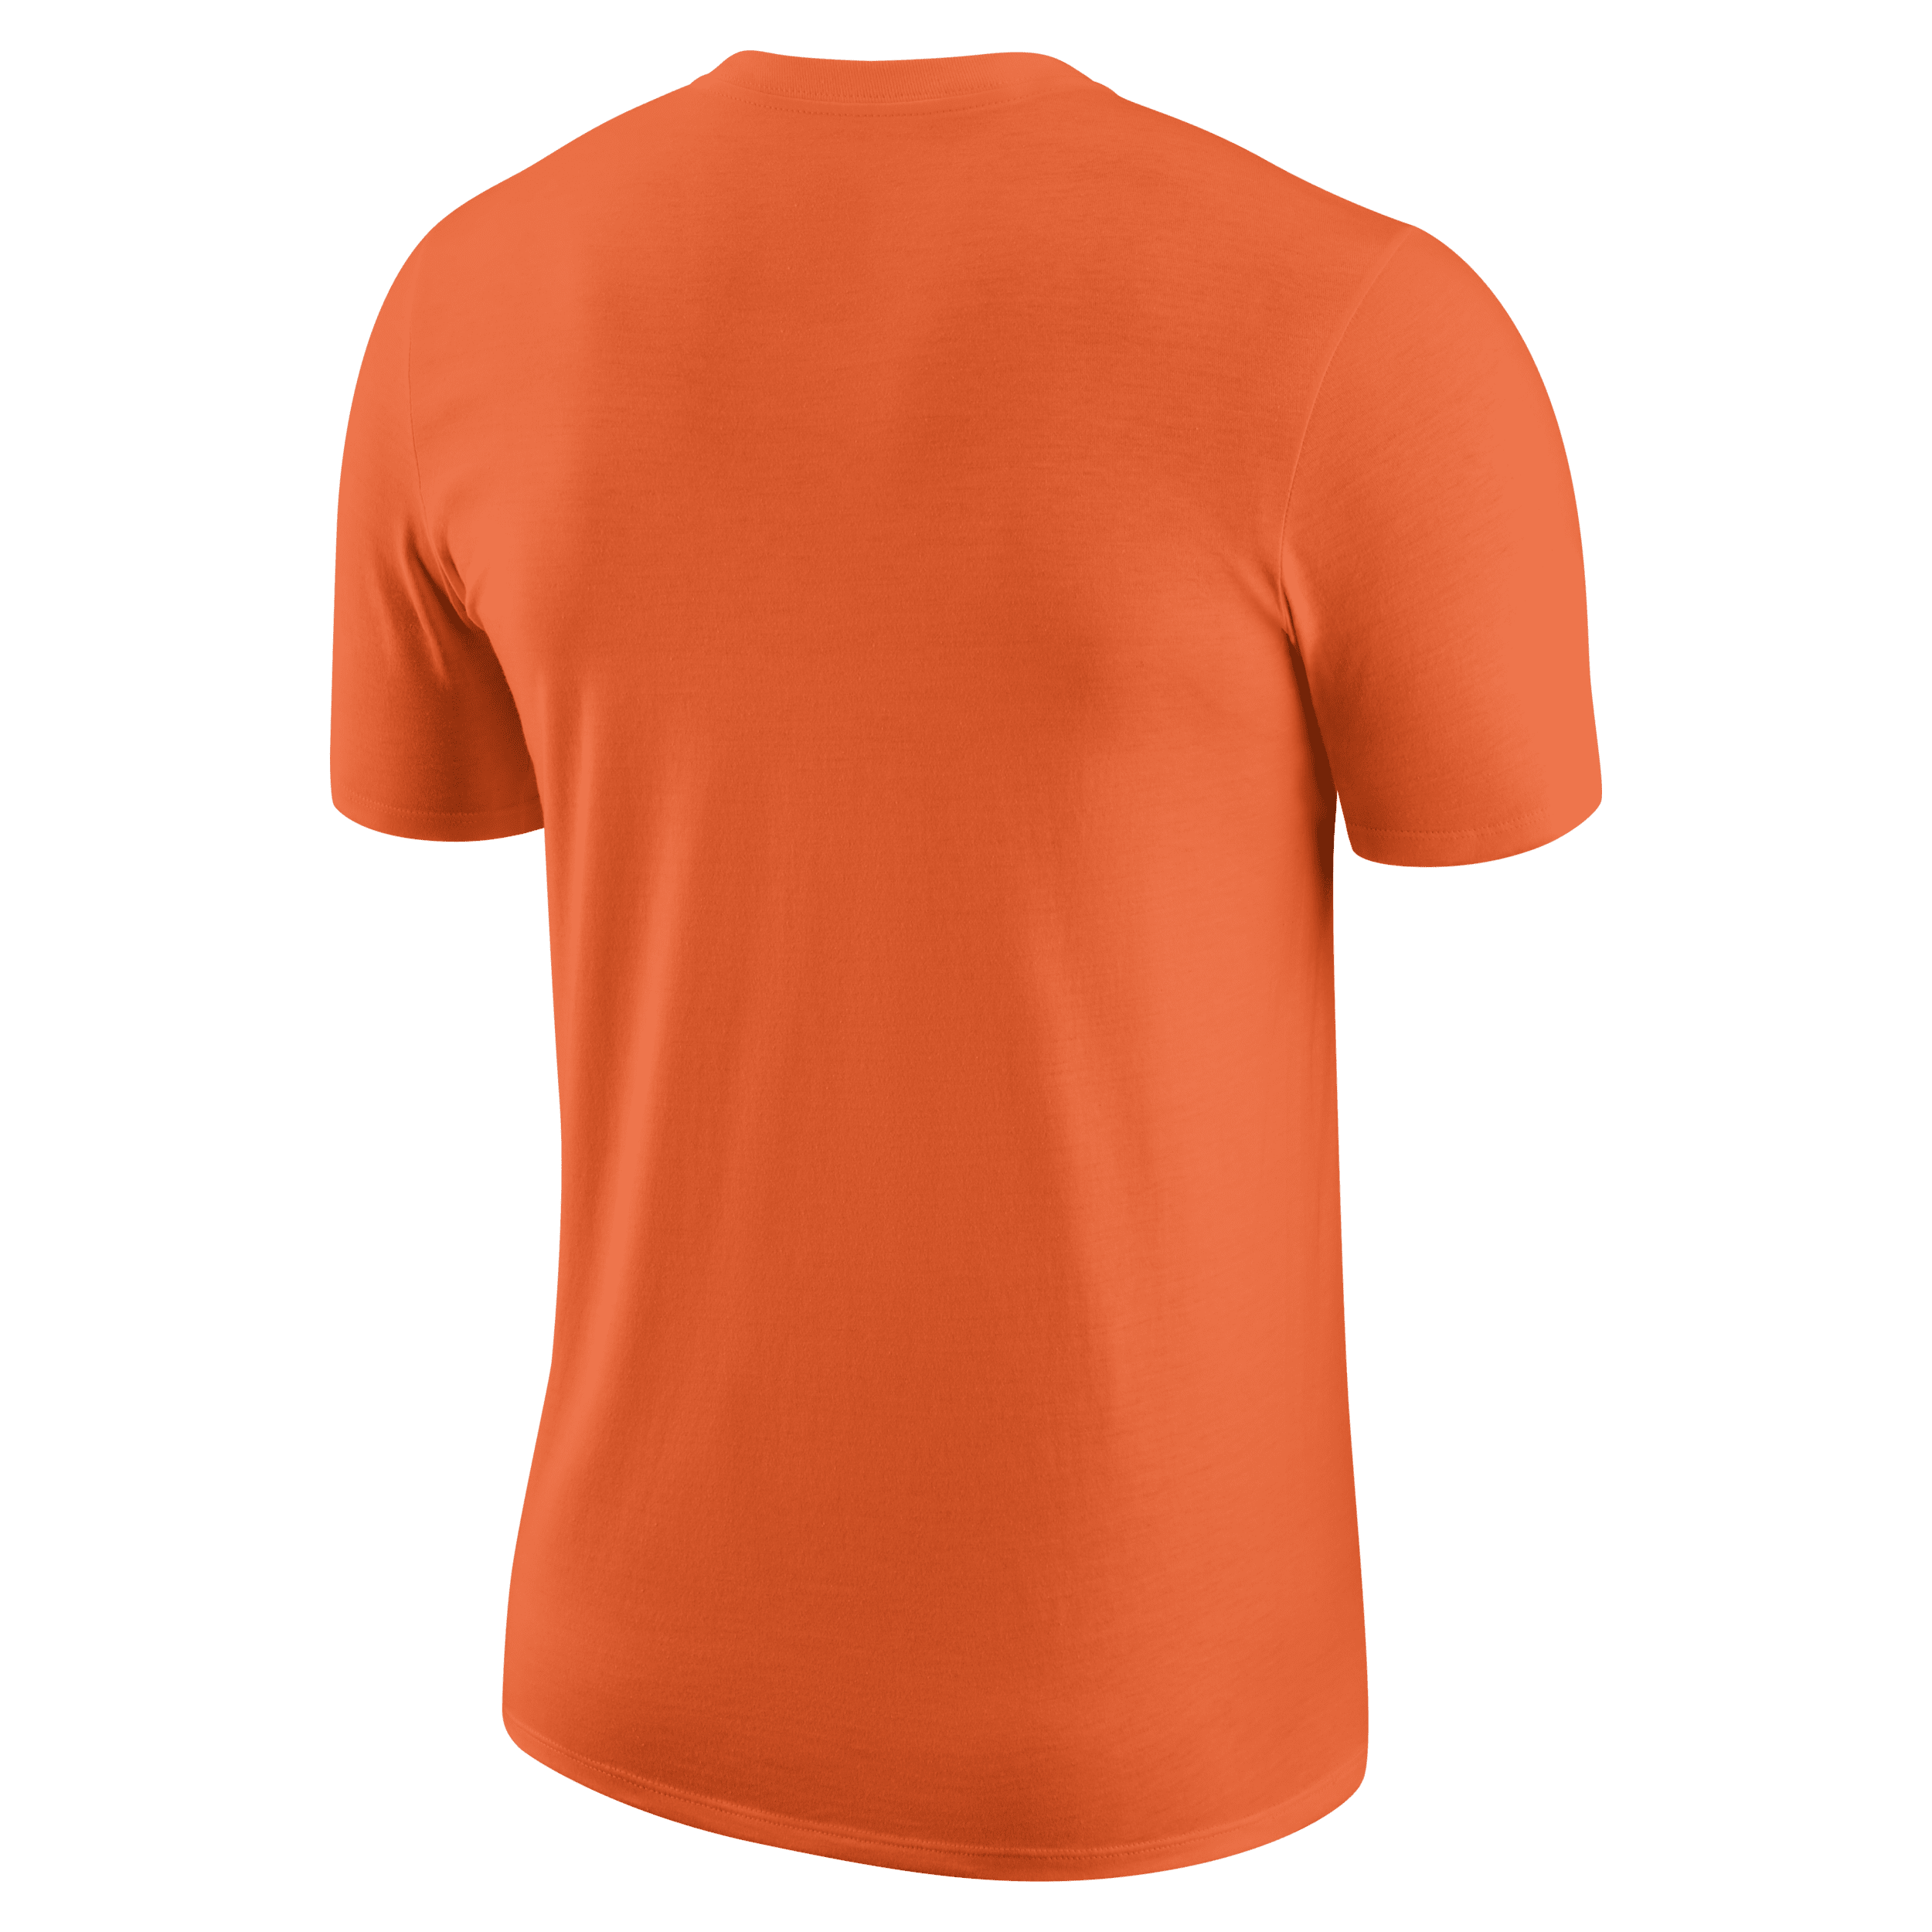 Nike Team 13 WNBA-shirt Oranje